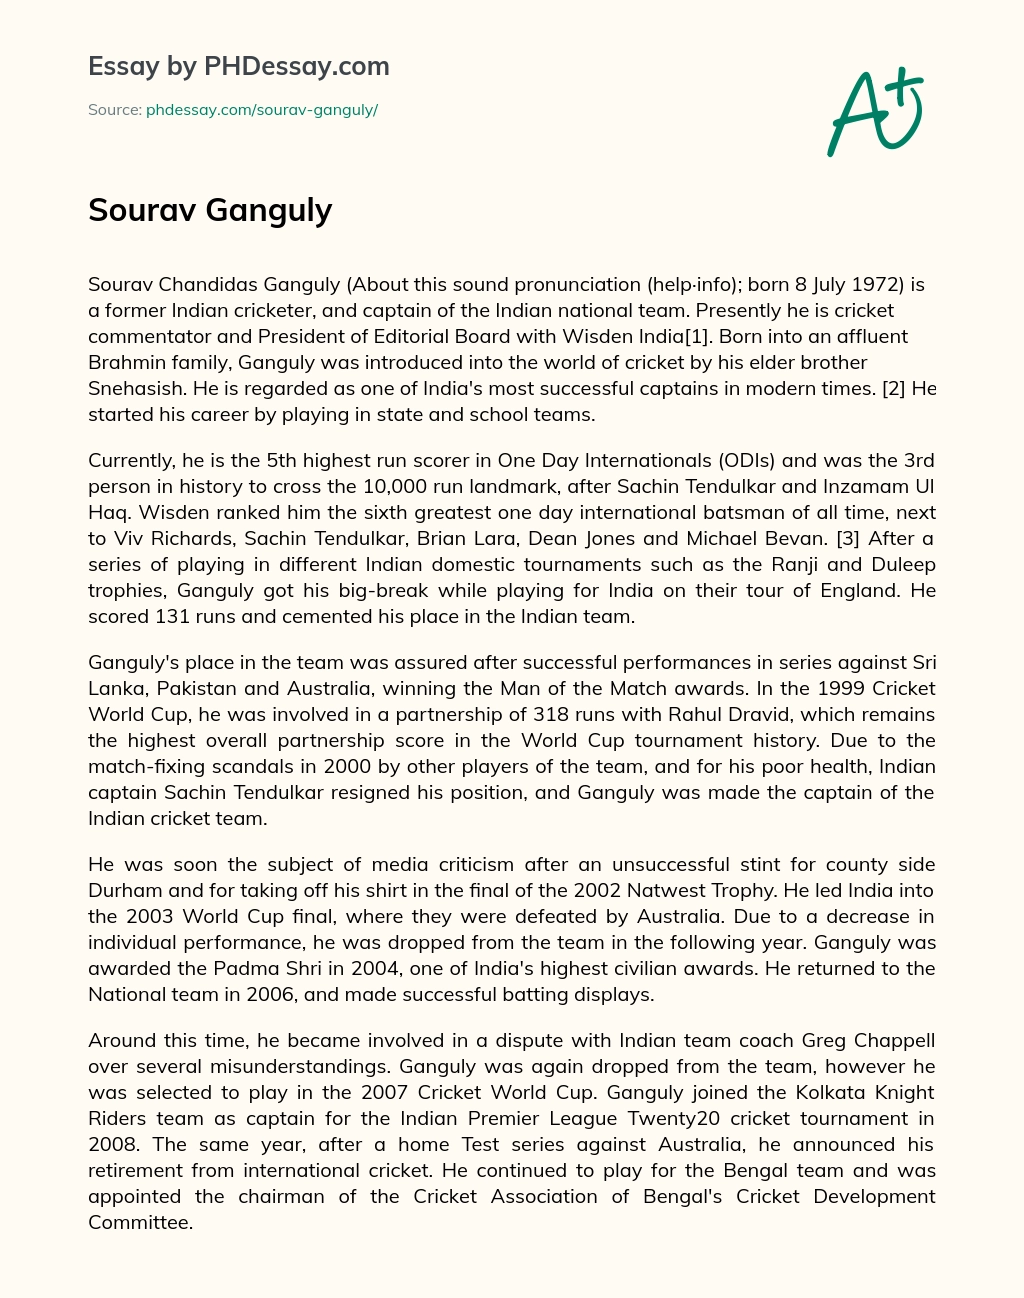 Sourav Ganguly essay